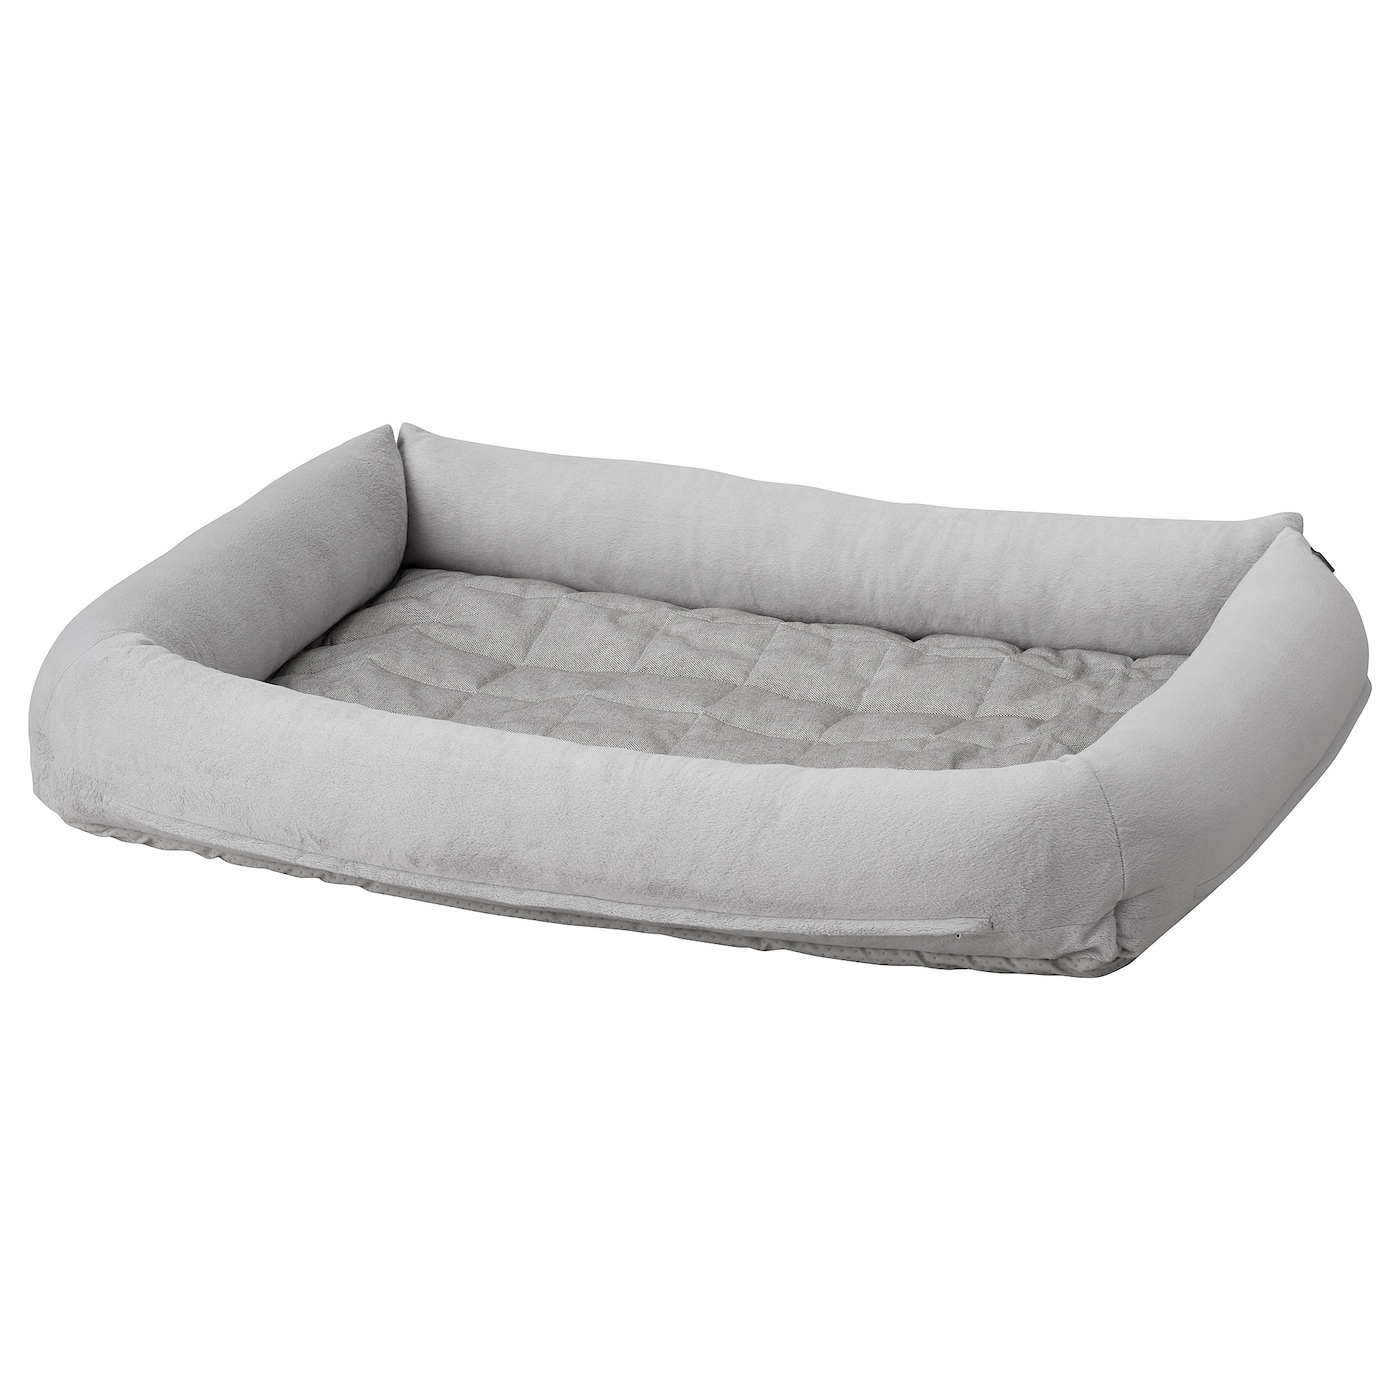 Кровать для собаки -  LURVIG IKEA/ ЛУРВИГ ИКЕА,  93х69 см, серый